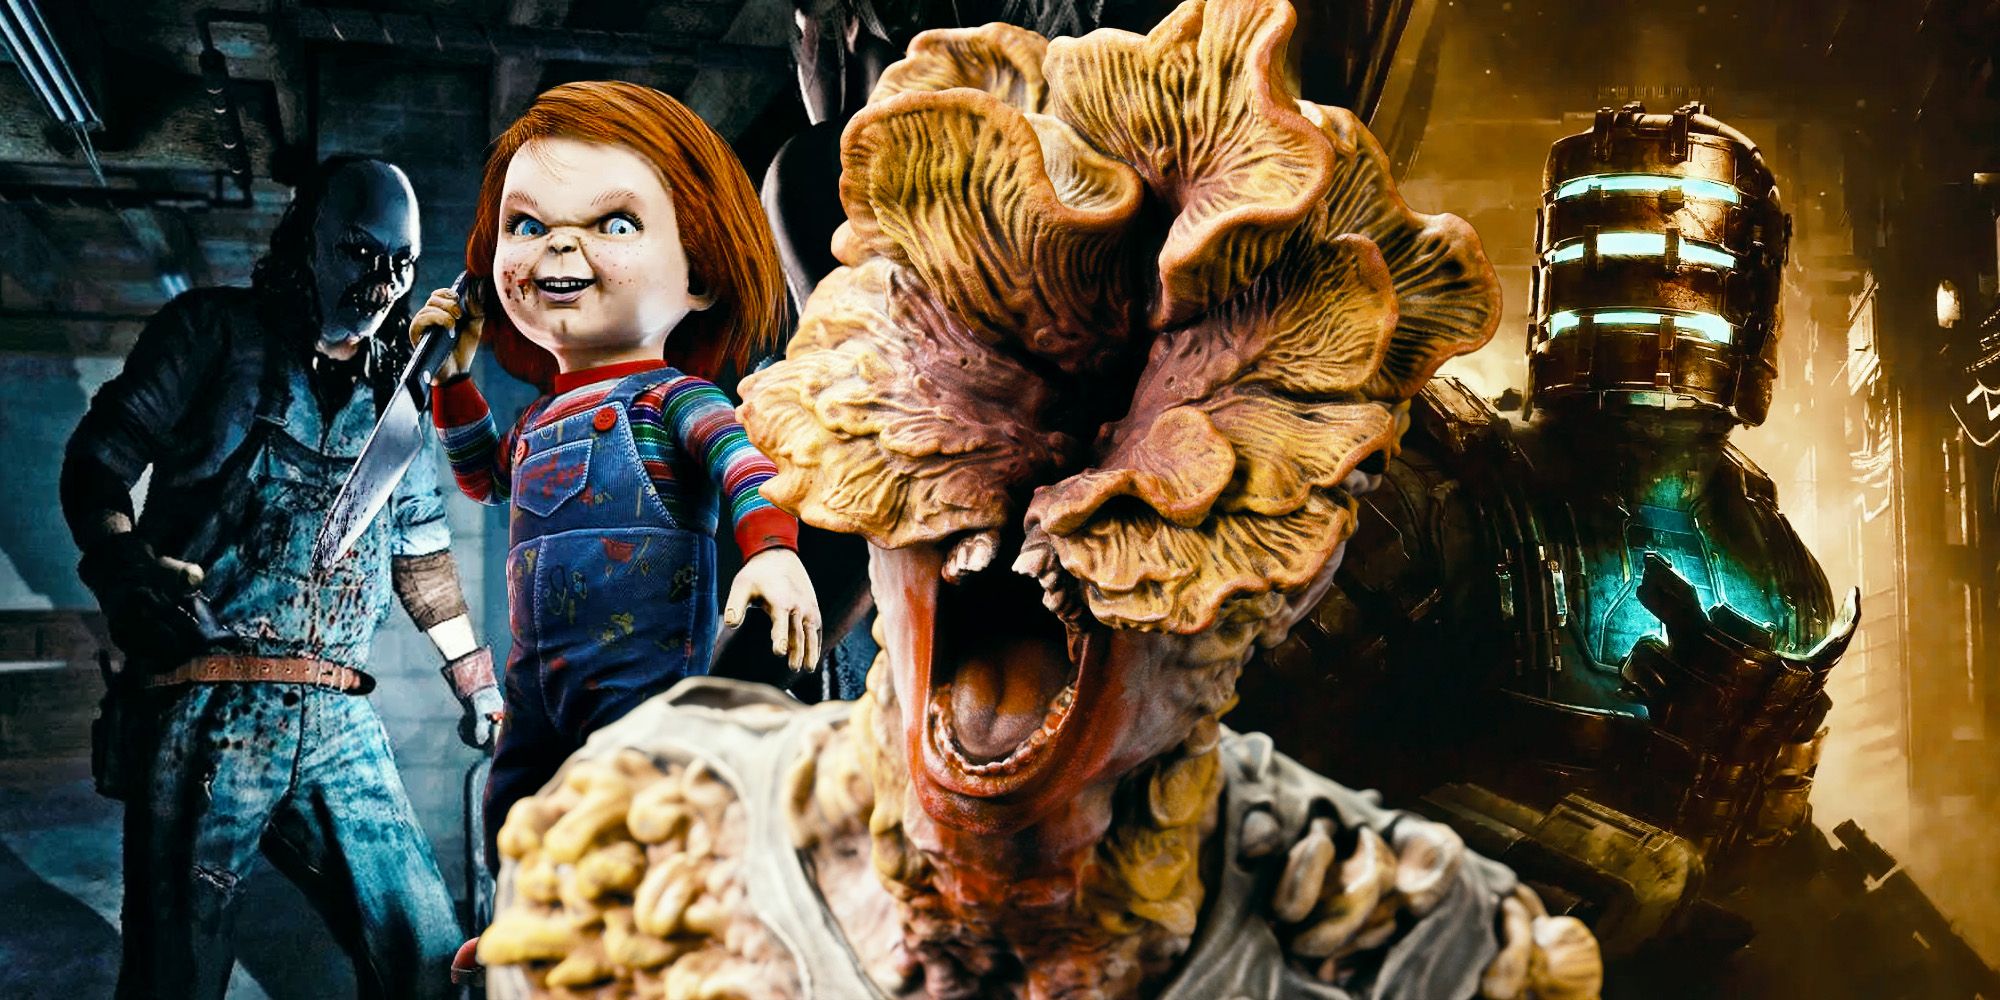 Personajes de juegos de terror, incluido un Clicker de The Last of Us Part 1, Isaac con casco de Dead Space Remake, Chucky de Dead by Daylight y el payaso enmascarado de Until Dawn.